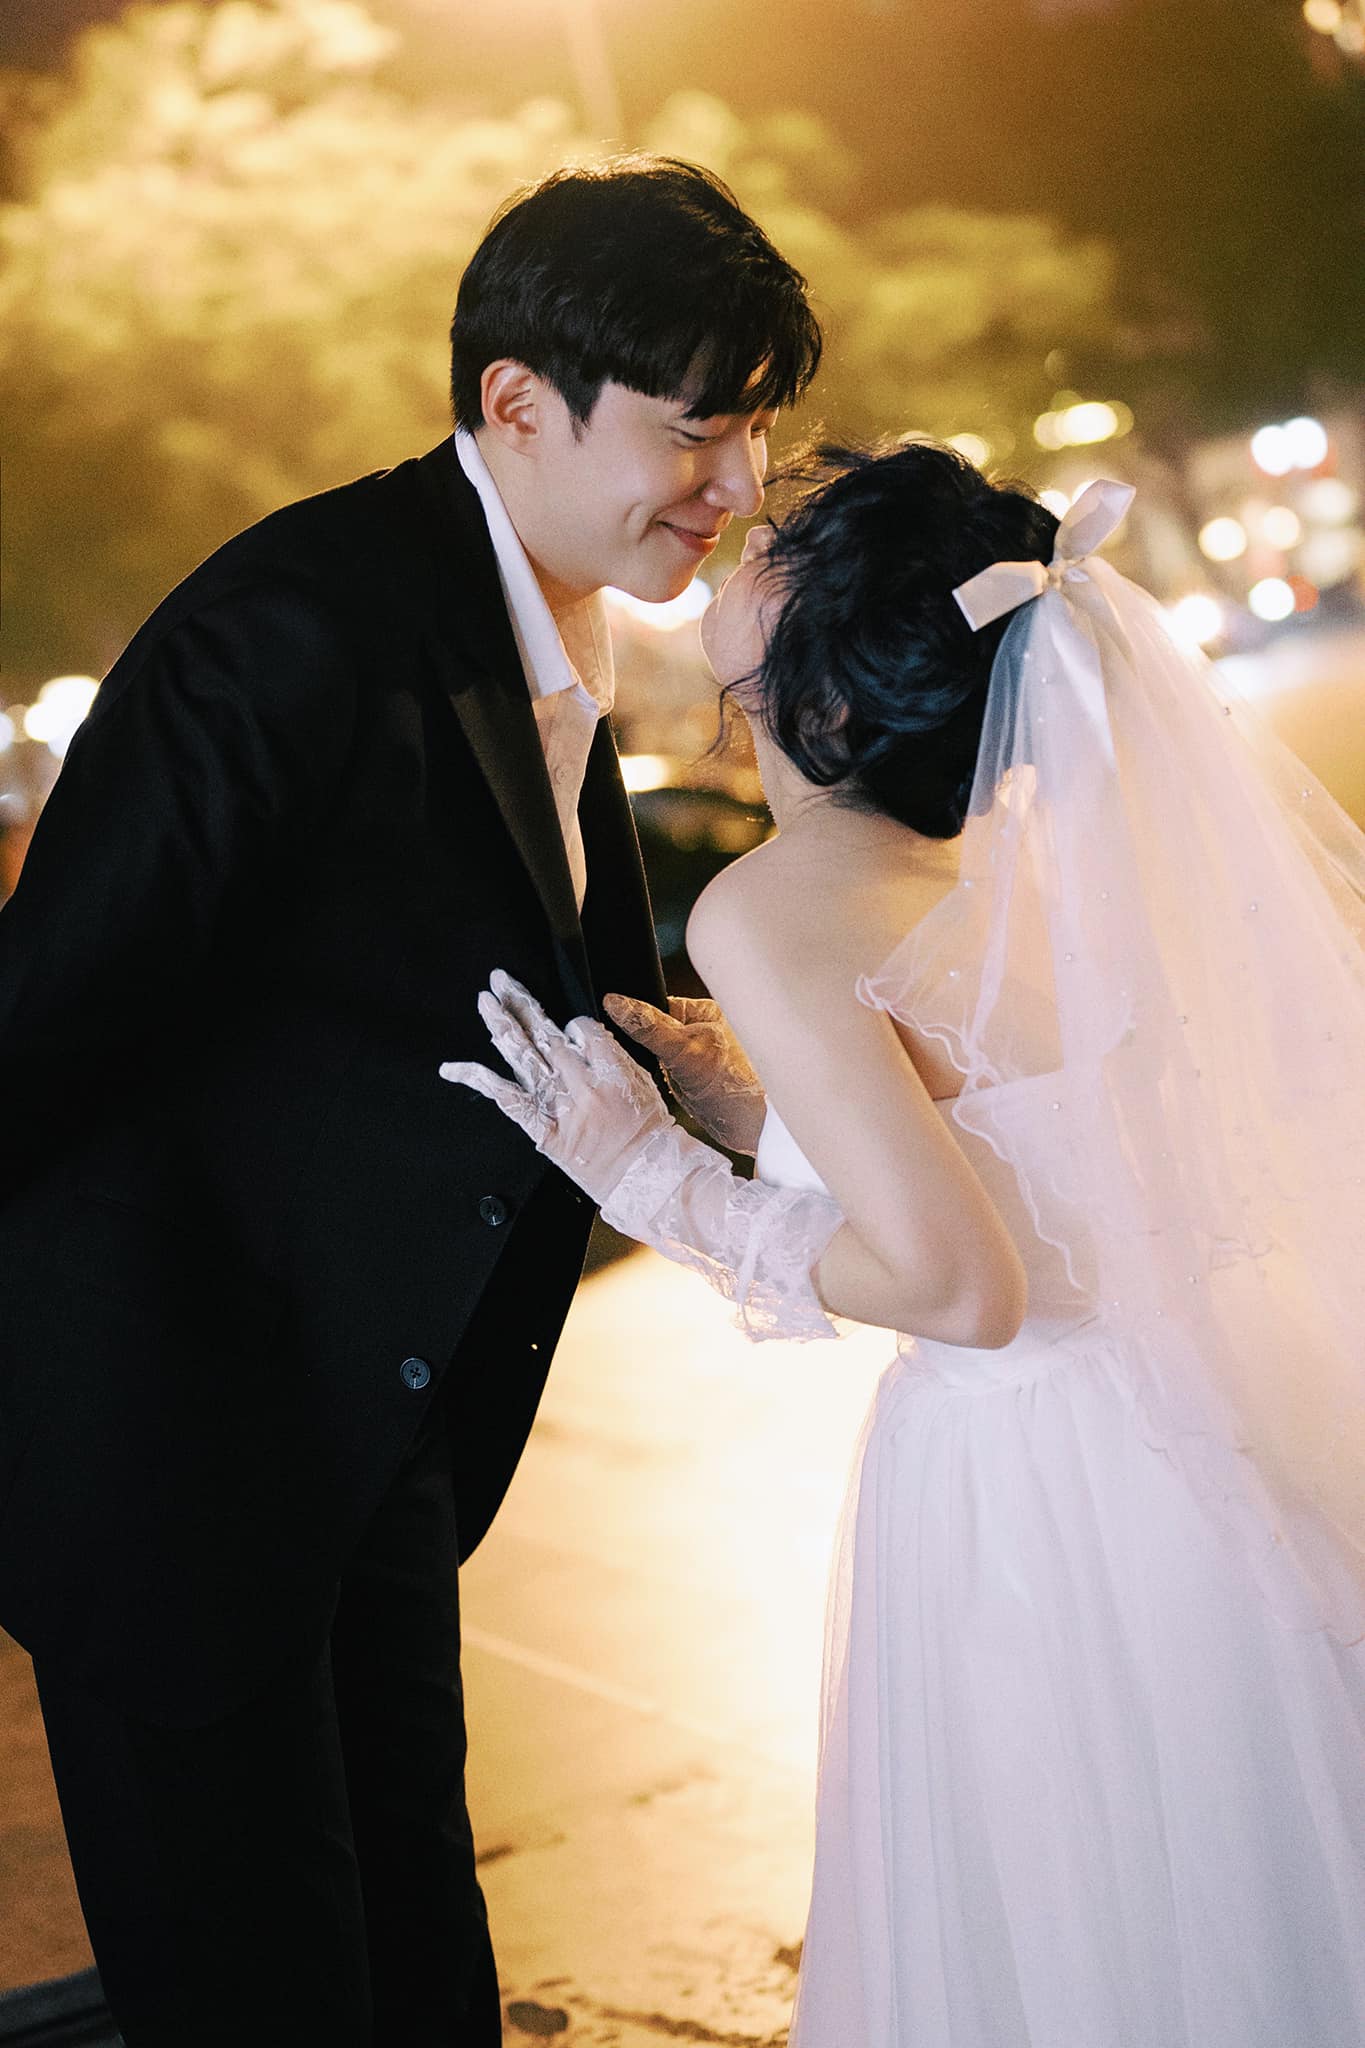 Chàng rể người Hàn Quốc cưới Tiktoker Hải Phòng, đến ngày rước dâu vẫn thắc mắc một câu khiến mẹ vợ phải giải thích - ảnh 4